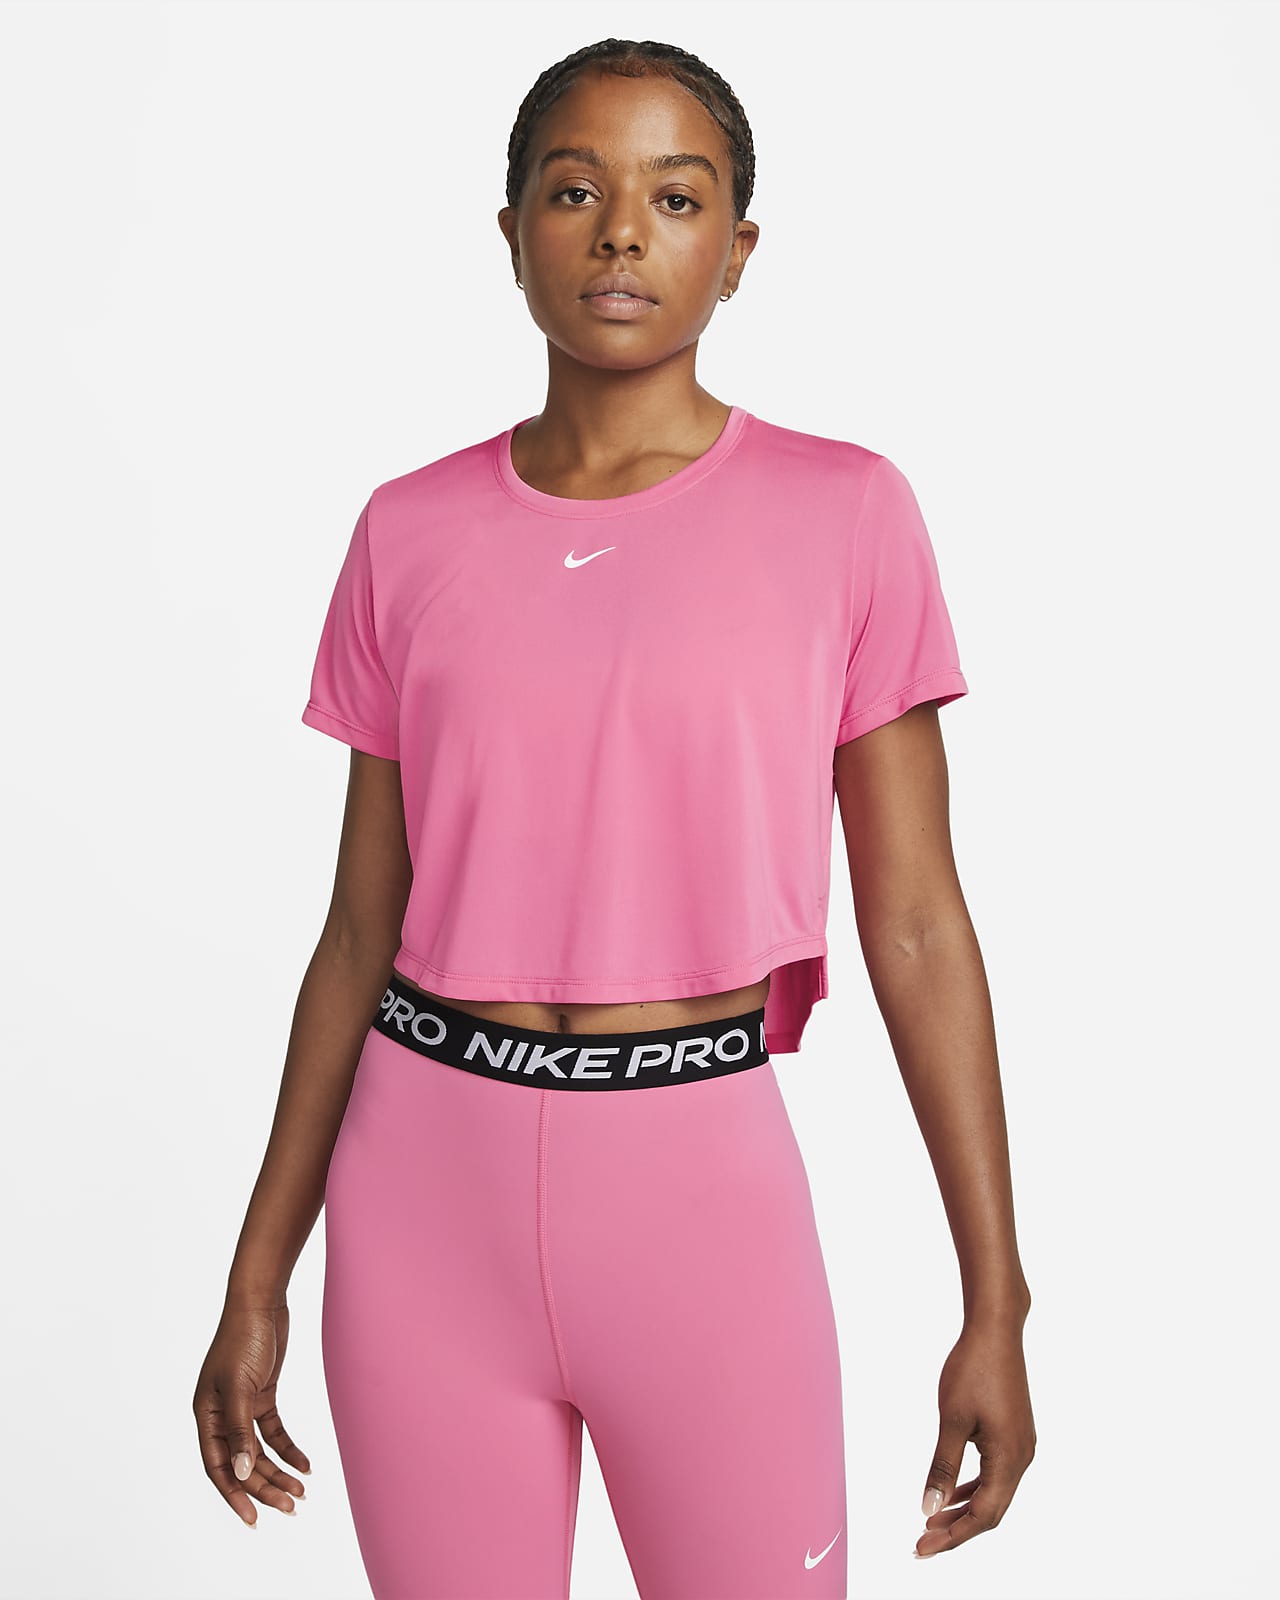 Nike Dri-FIT One Women's Standard Fit 